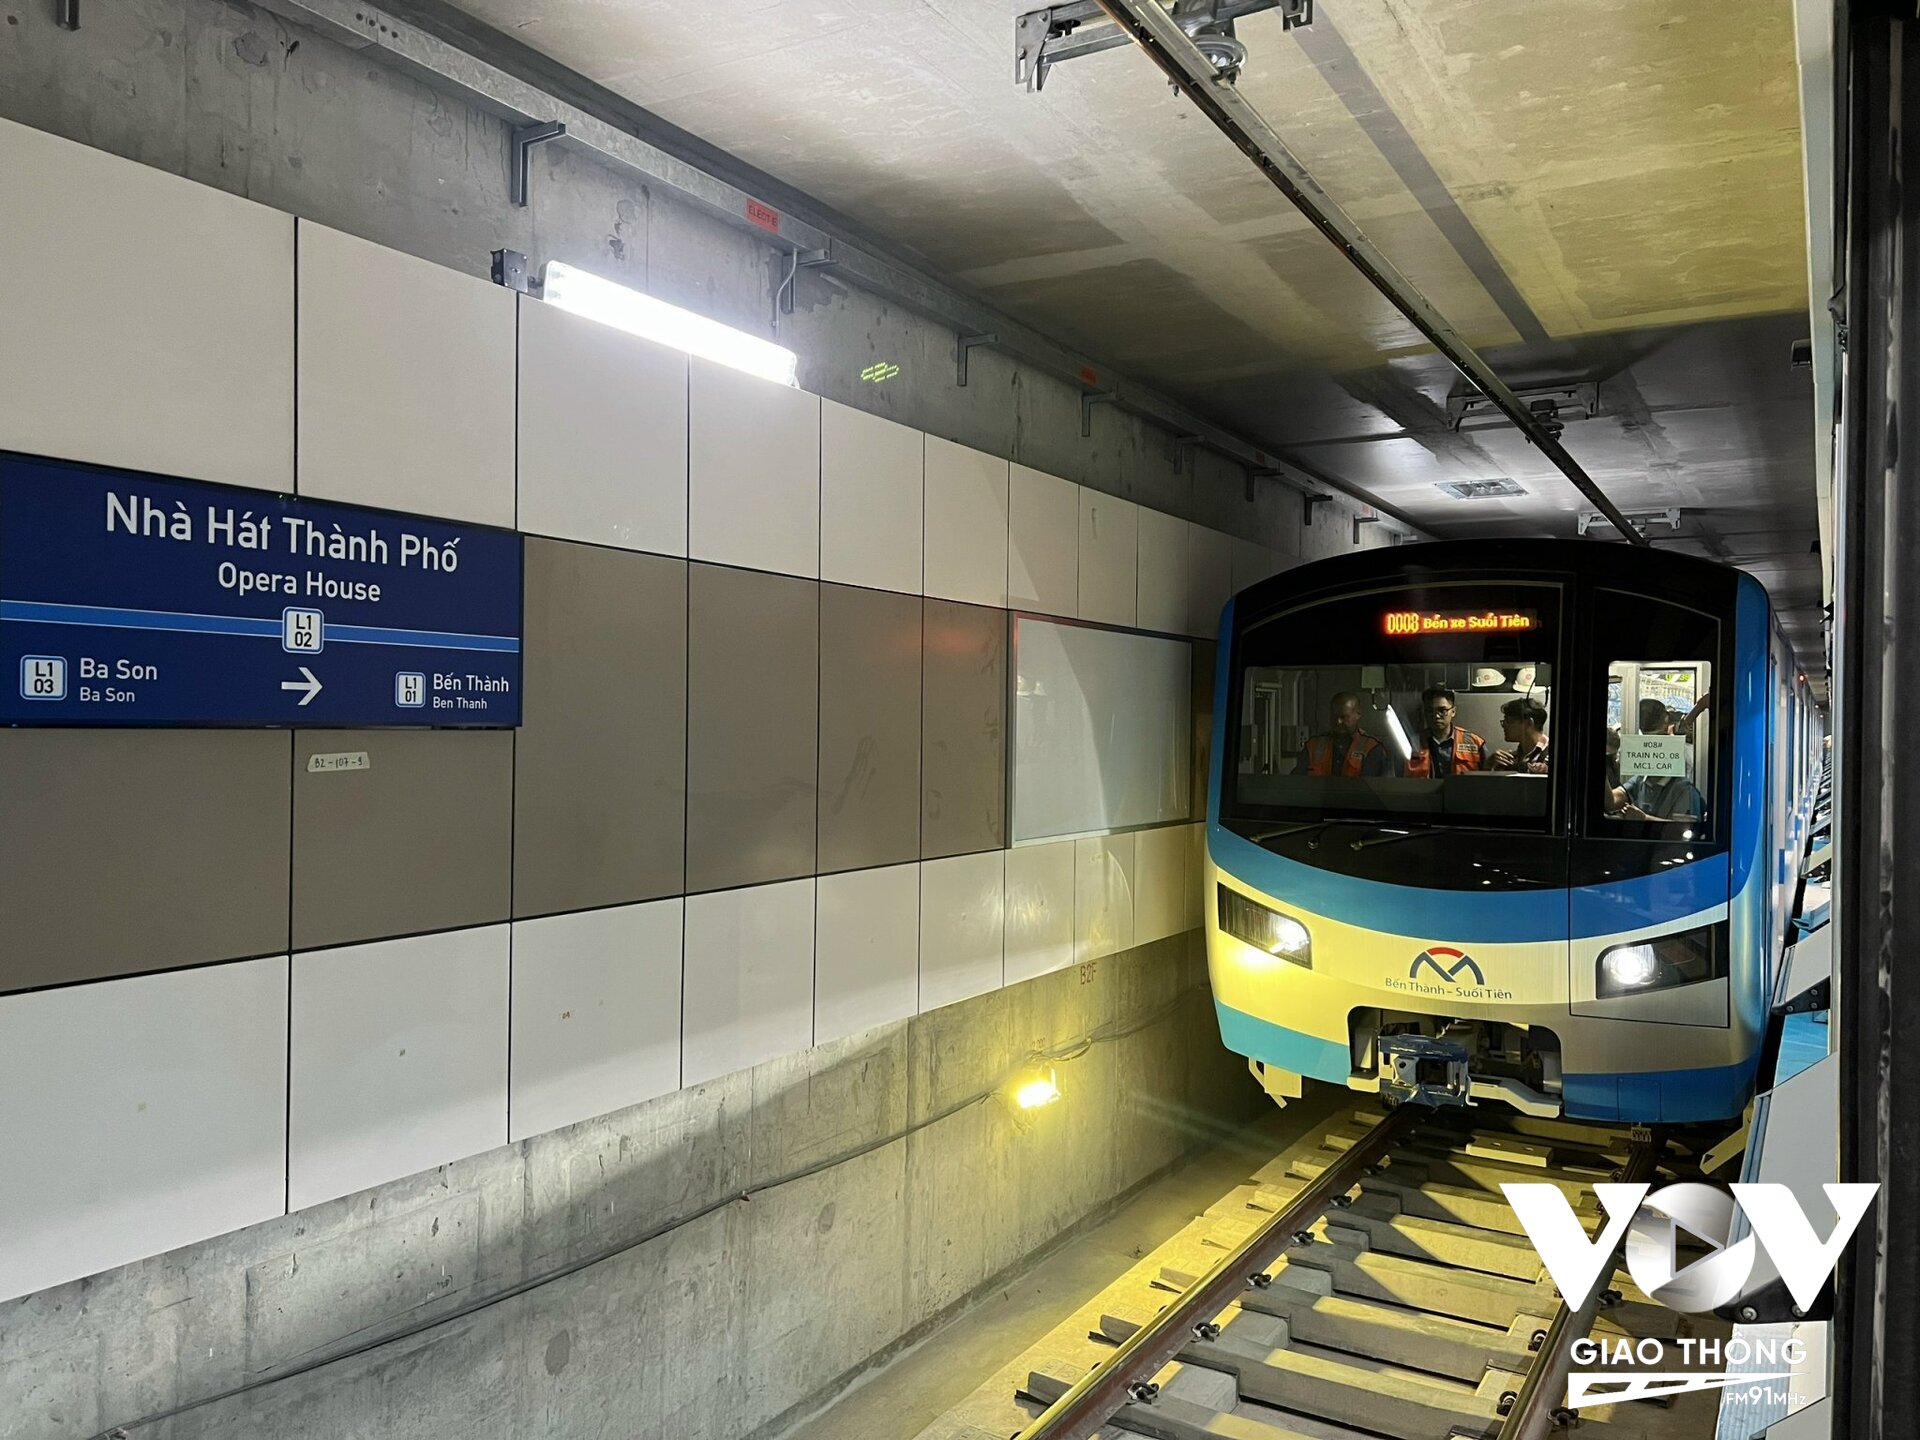 Trong khi đó tại HN, với những kết quả bước đầu khả quan của tàu điện Cát Linh, thành phố tiếp tục đề xuất thêm 3 tuyến đường sắt đô thị, trong đó có một tuyến thay buýt nhanh BRT 01.